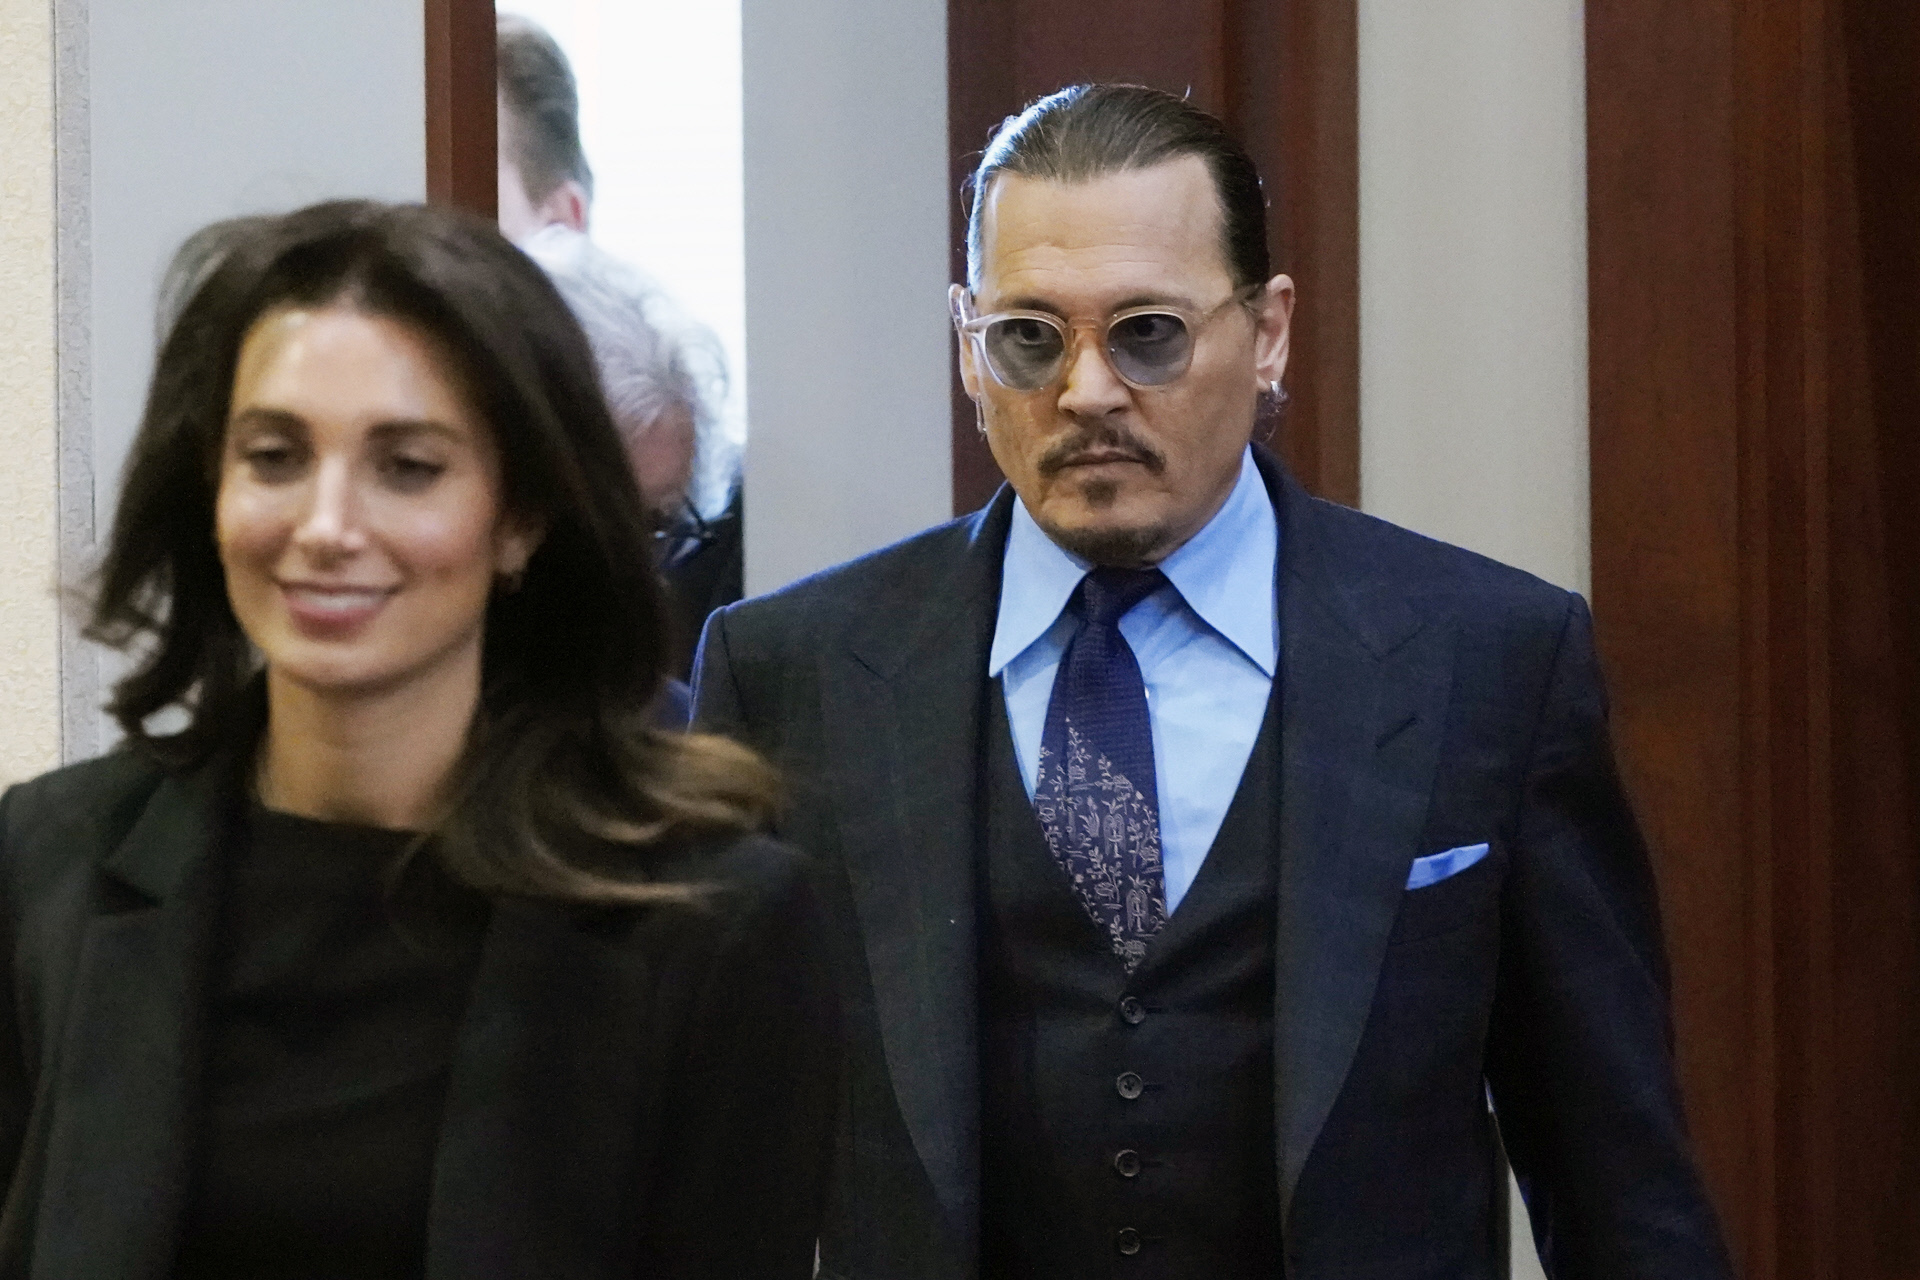 Camille Vasquez camina delante de su cliente, Johnny Depp.